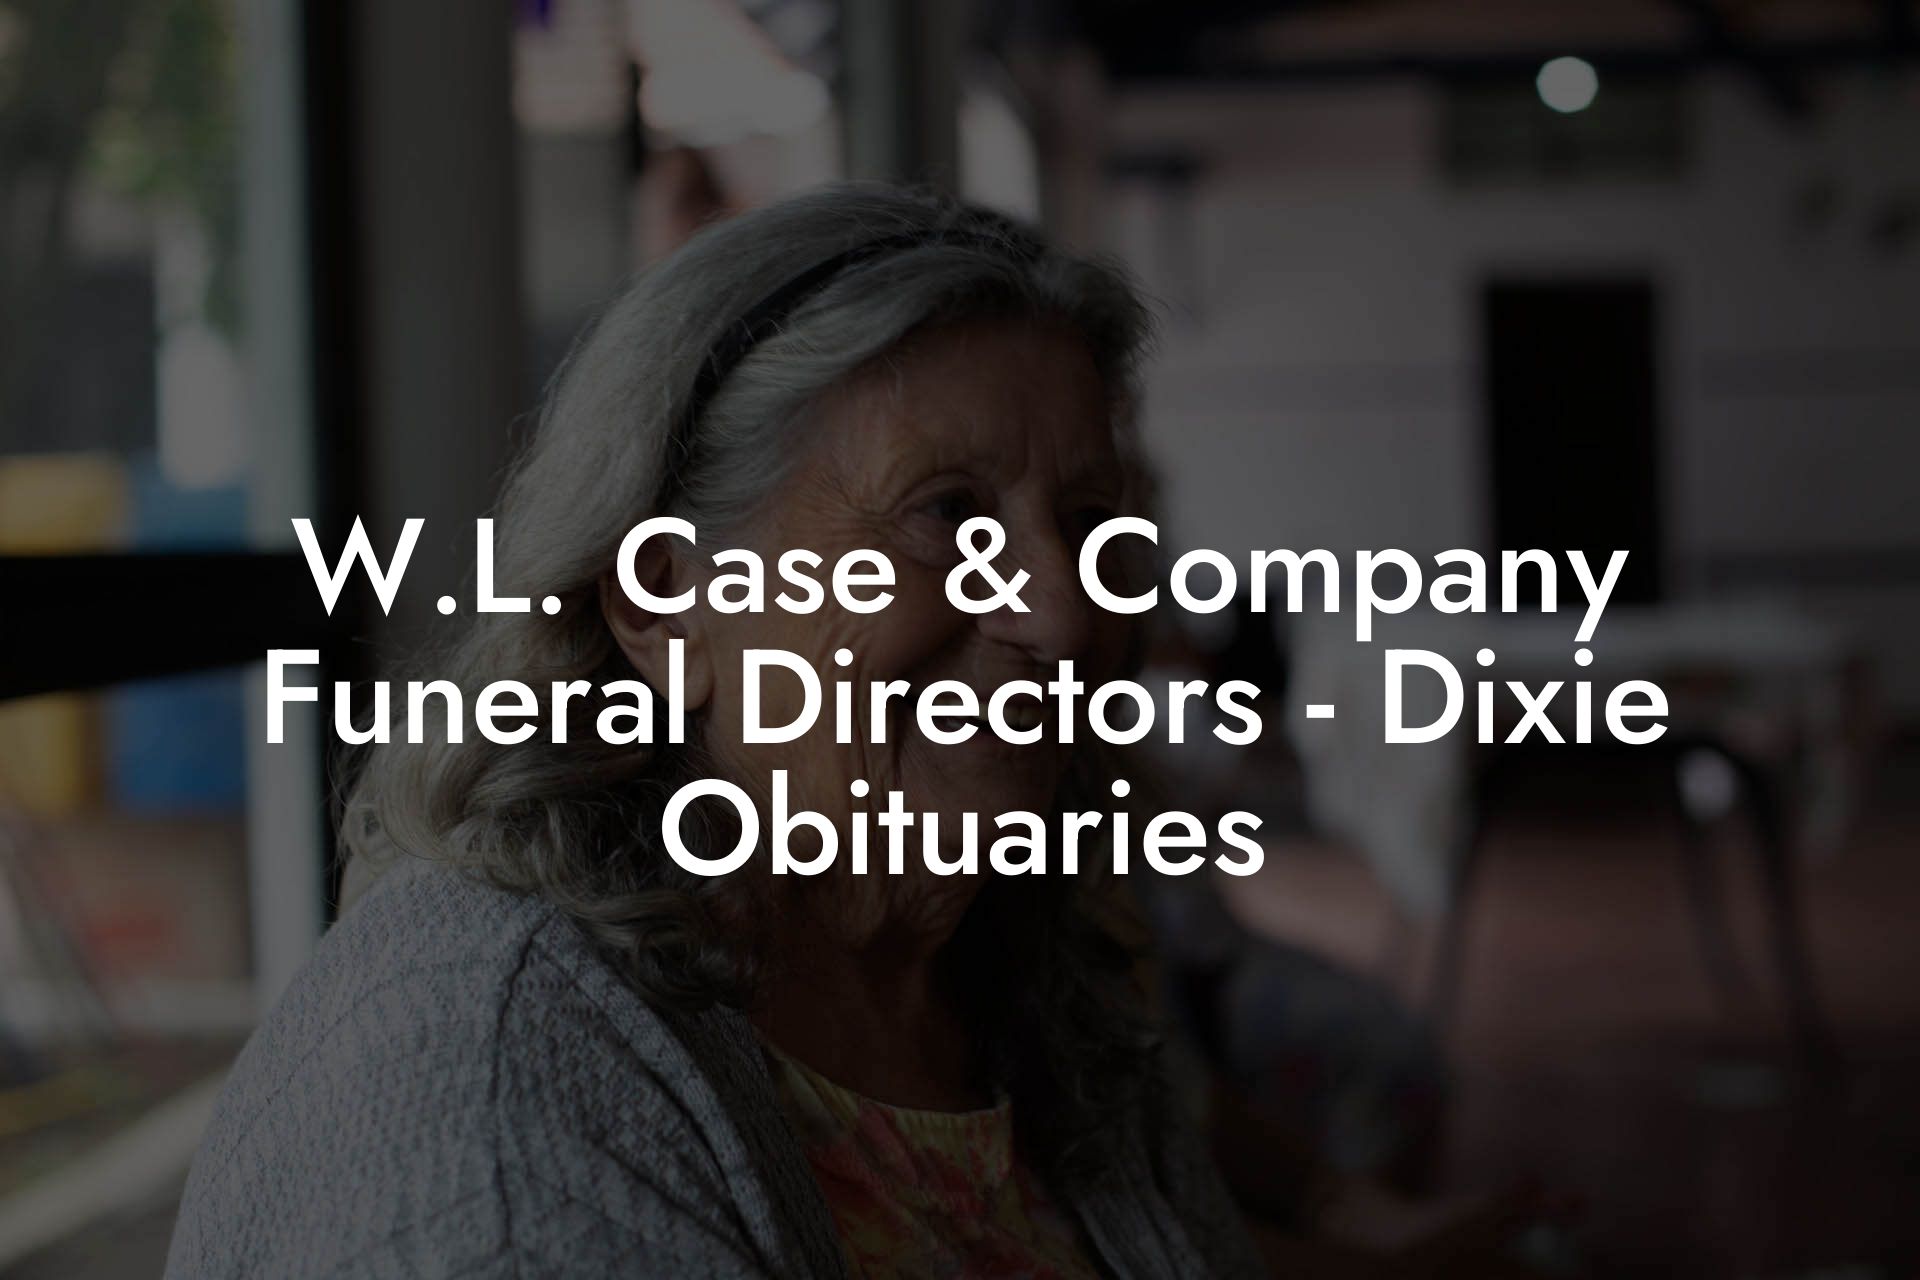 W.L. Case & Company Funeral Directors - Dixie Obituaries